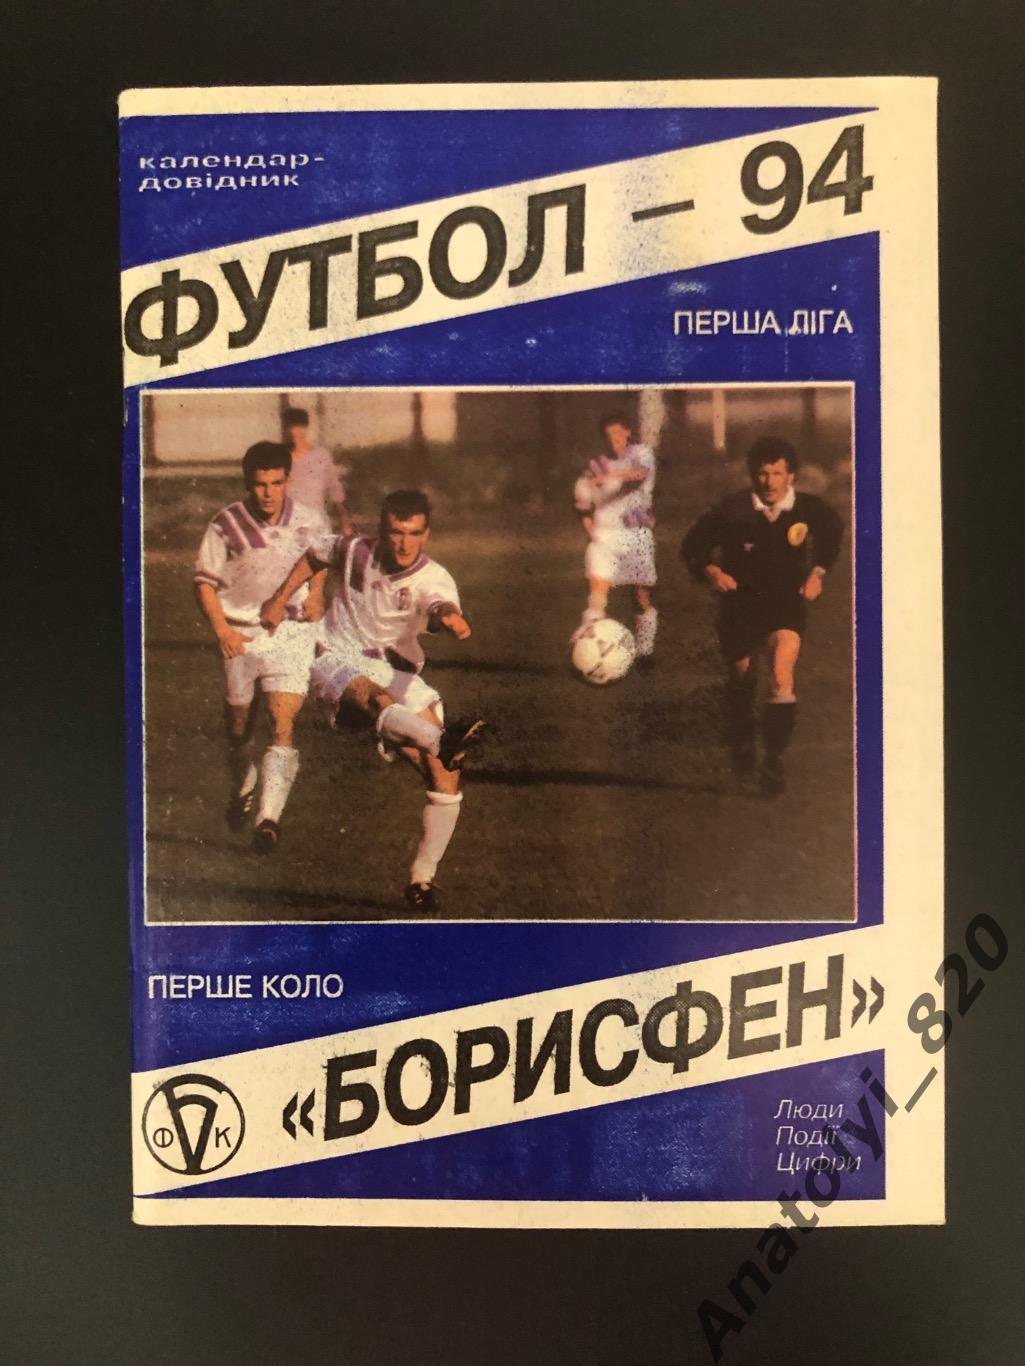 Борисфен 1994 год календарь - справочник